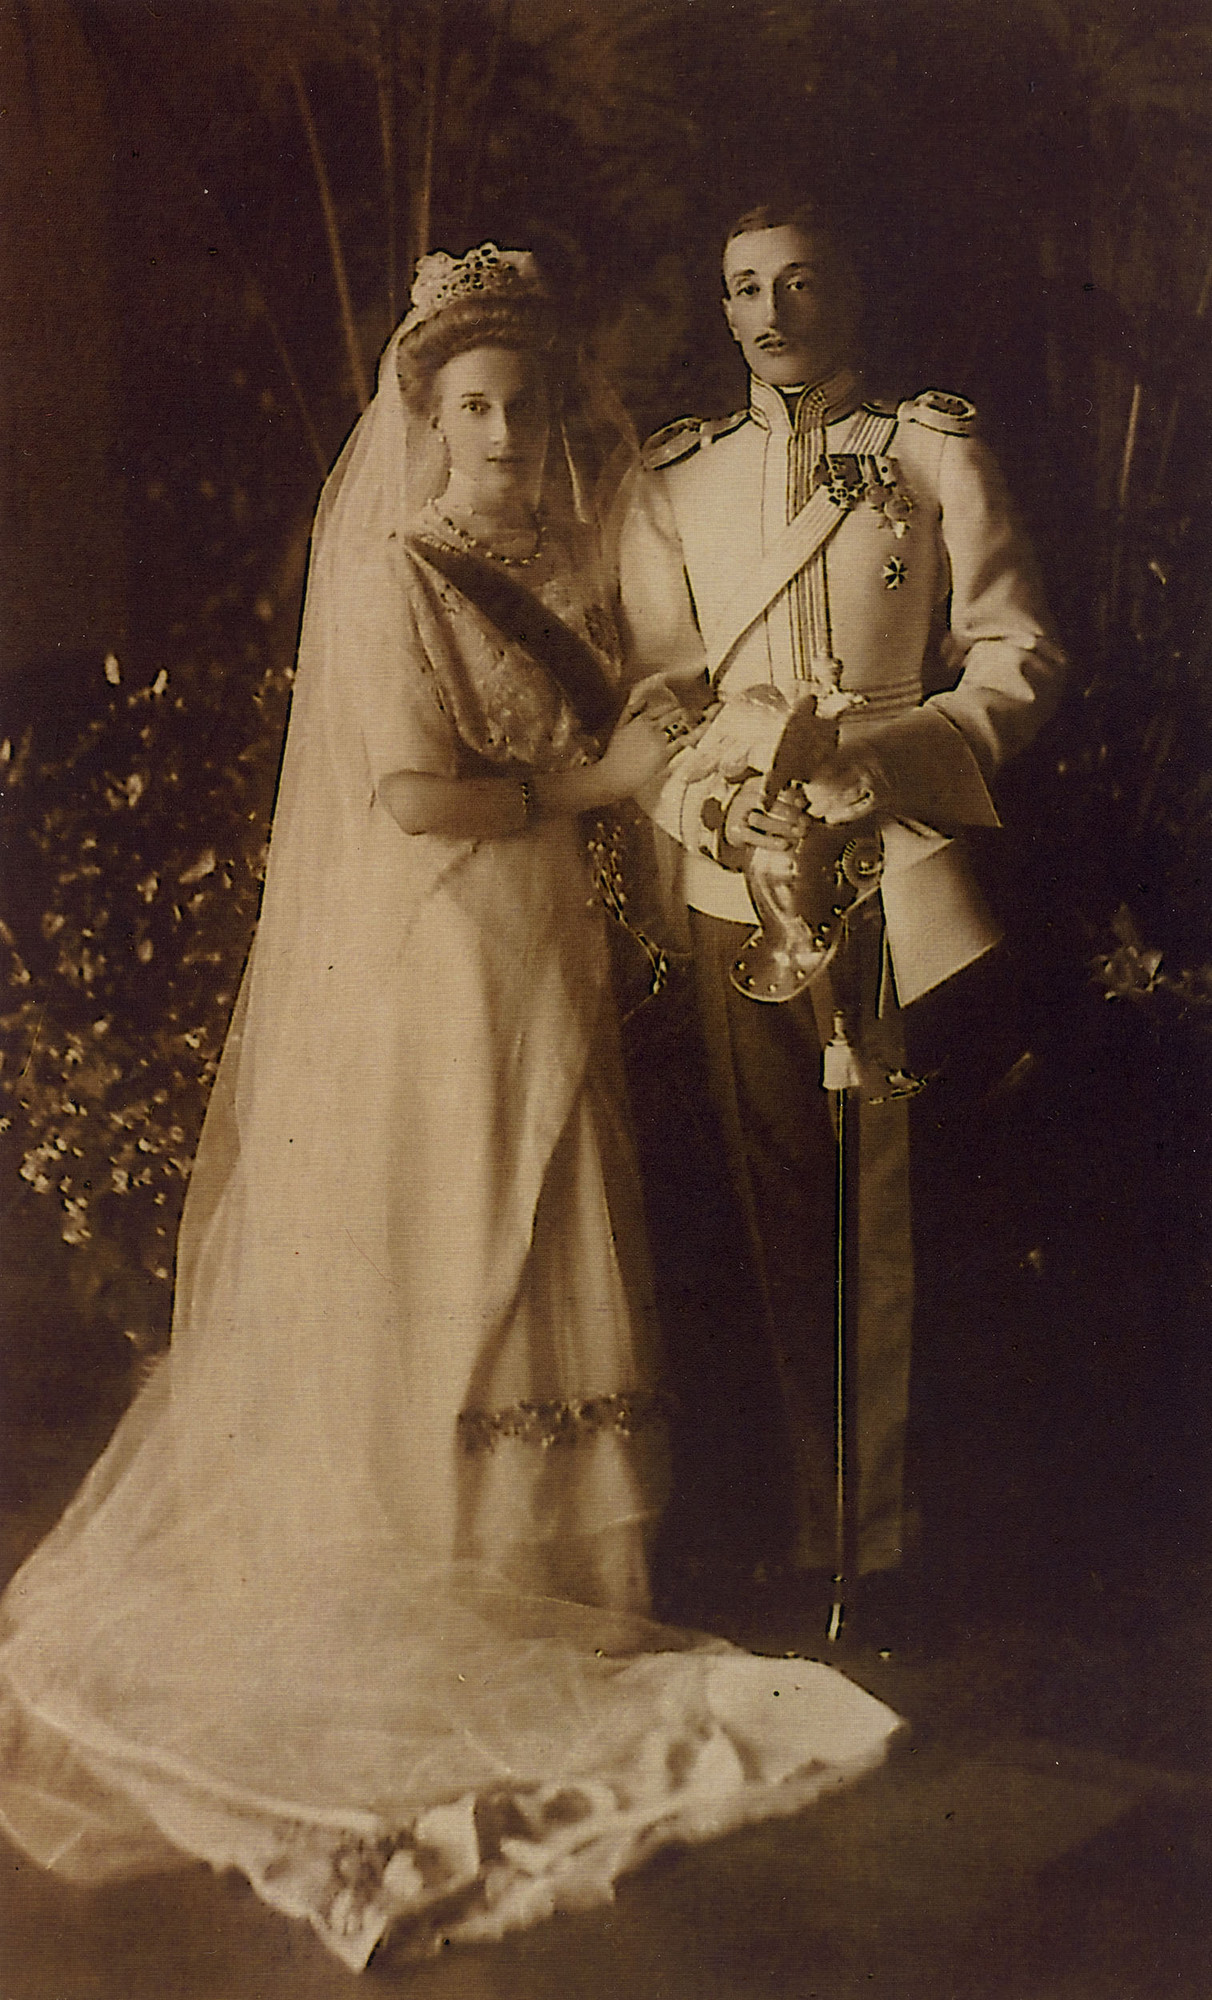 Casamento do príncipe georgiano Konstantine Bagration de Mukhrani com a Princesa Tatiana Konstantinovna.